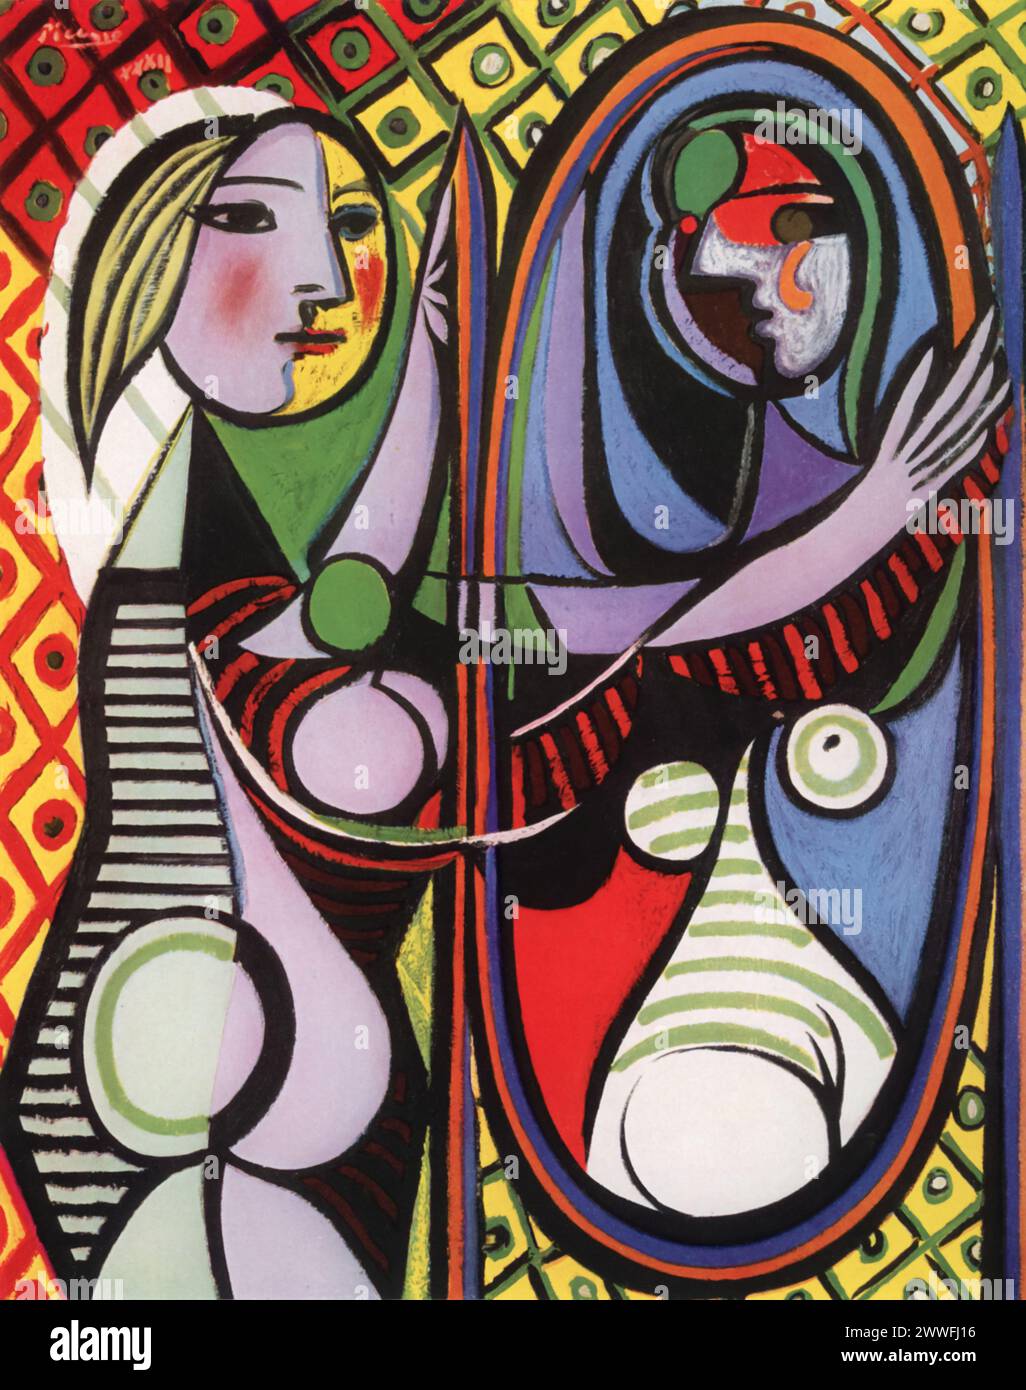 « Young Girl in a Mirror » de Pablo Picasso (vers 1932) : présentée au Museum of Modern Art de New York, cette peinture est un exemple frappant de l'exploration par Picasso de la forme, de la couleur et de la profondeur psychologique à travers l'objectif cubiste. L'œuvre met en scène Marie-Thérèse Walter, la muse et amante de Picasso, s'engageant dans son reflet dans un miroir, qui présente une vision déformée et multiforme de sa figure. Banque D'Images